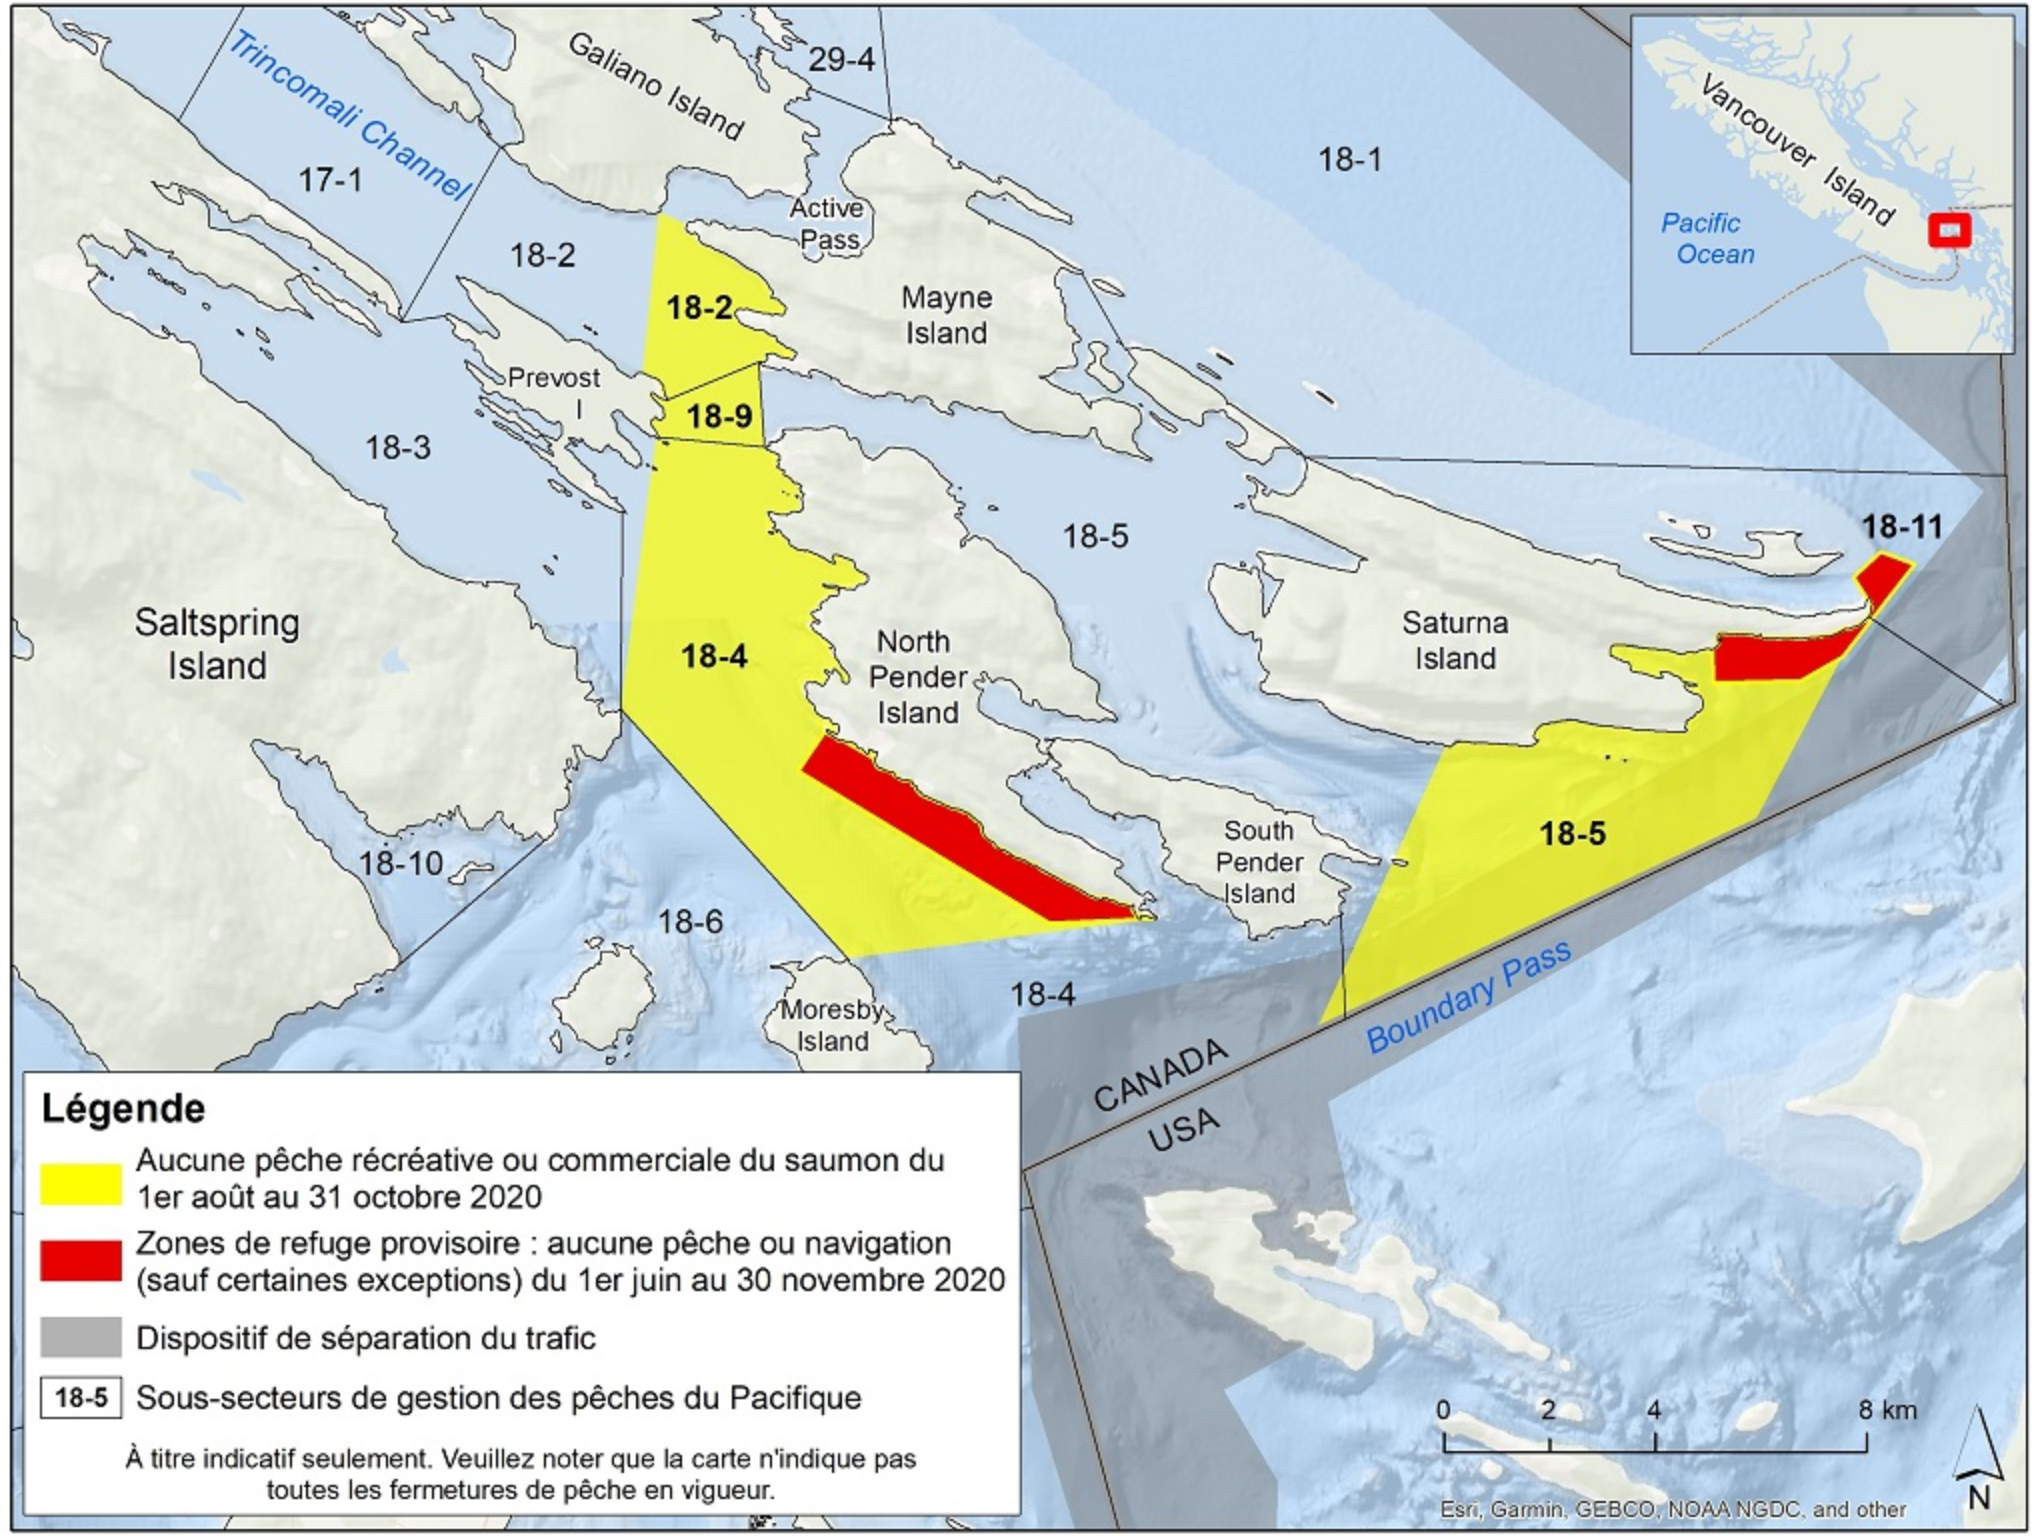 Zones de refuge provisoire de l’île Saturna et de l’île Pender